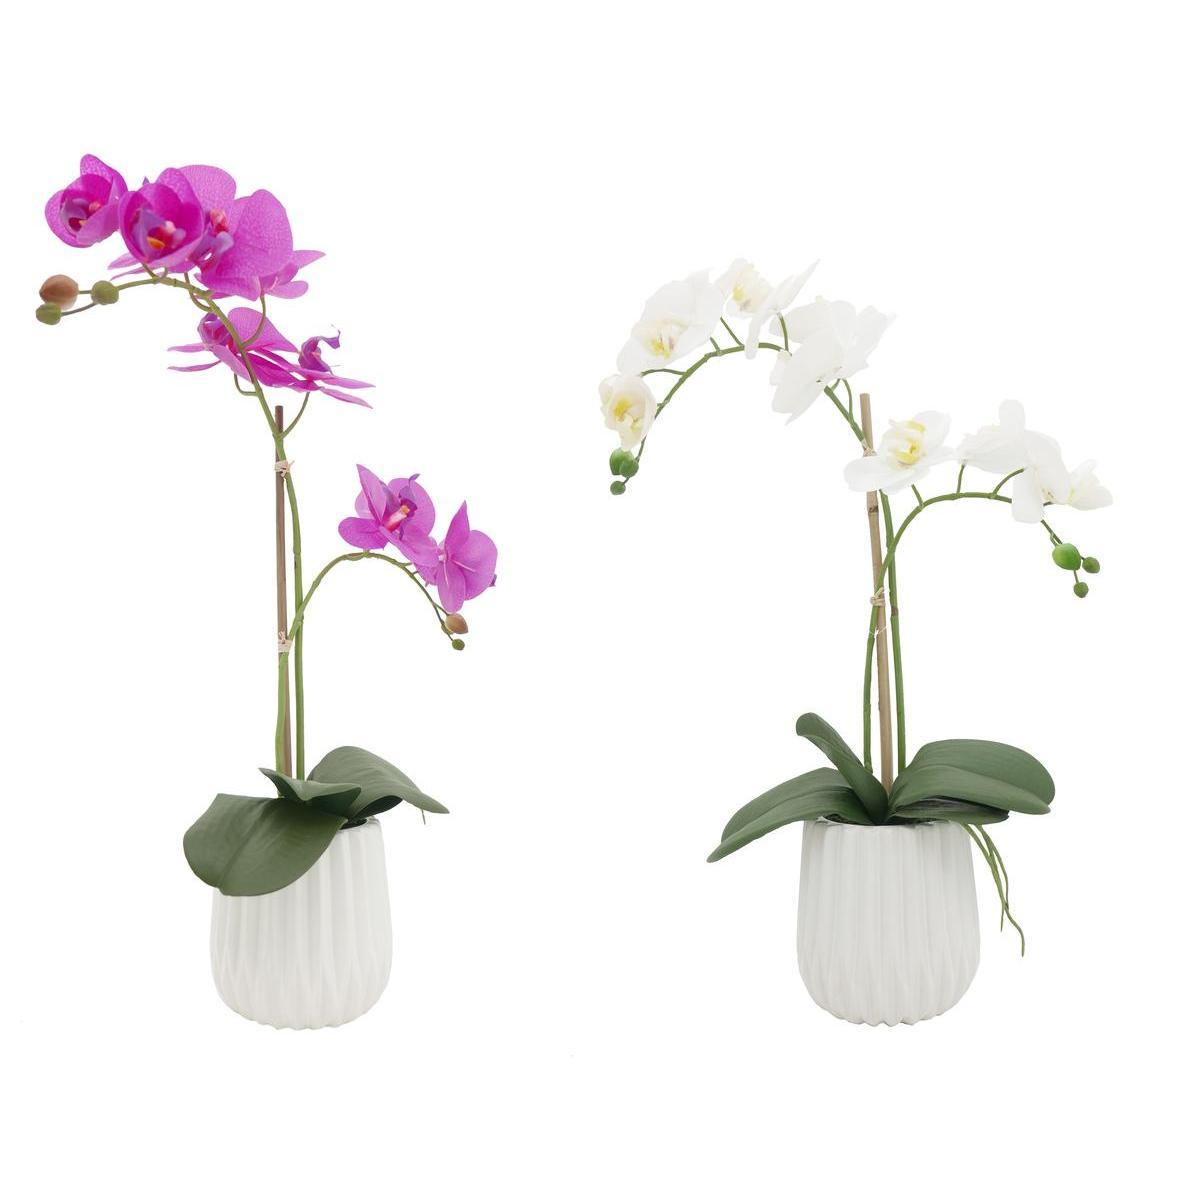 Orchidées - Blanc, rose